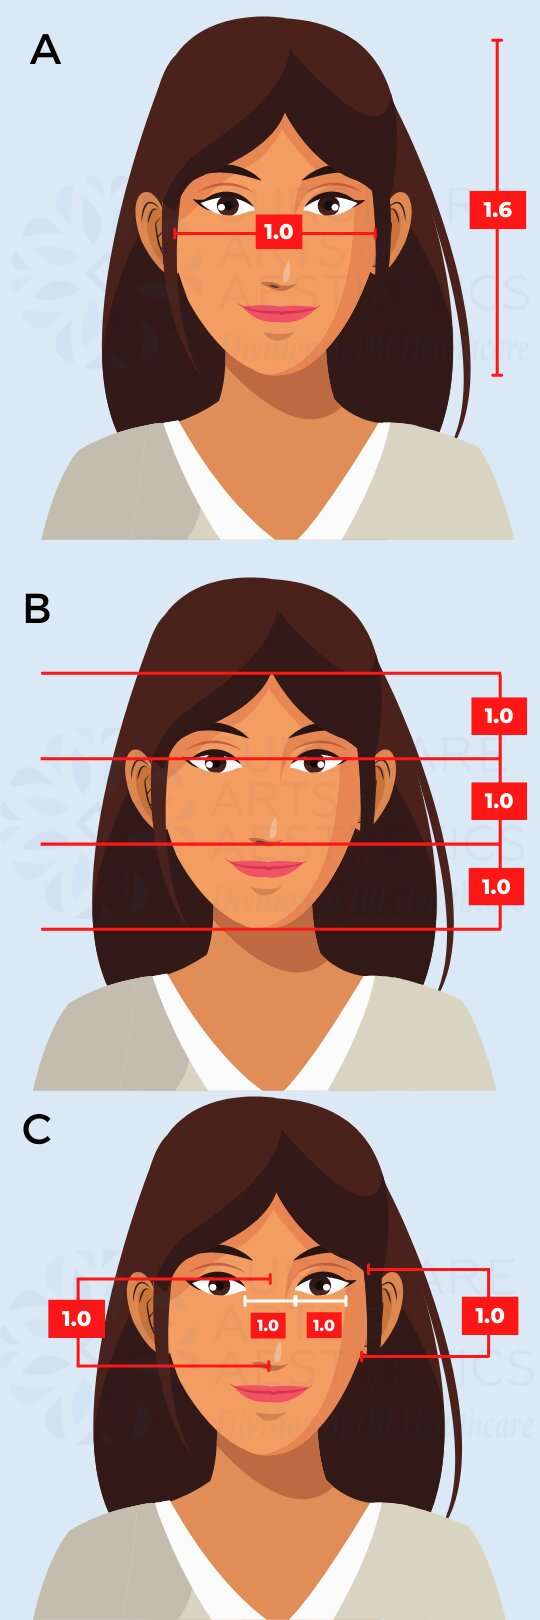 How to determine your facial symmetry